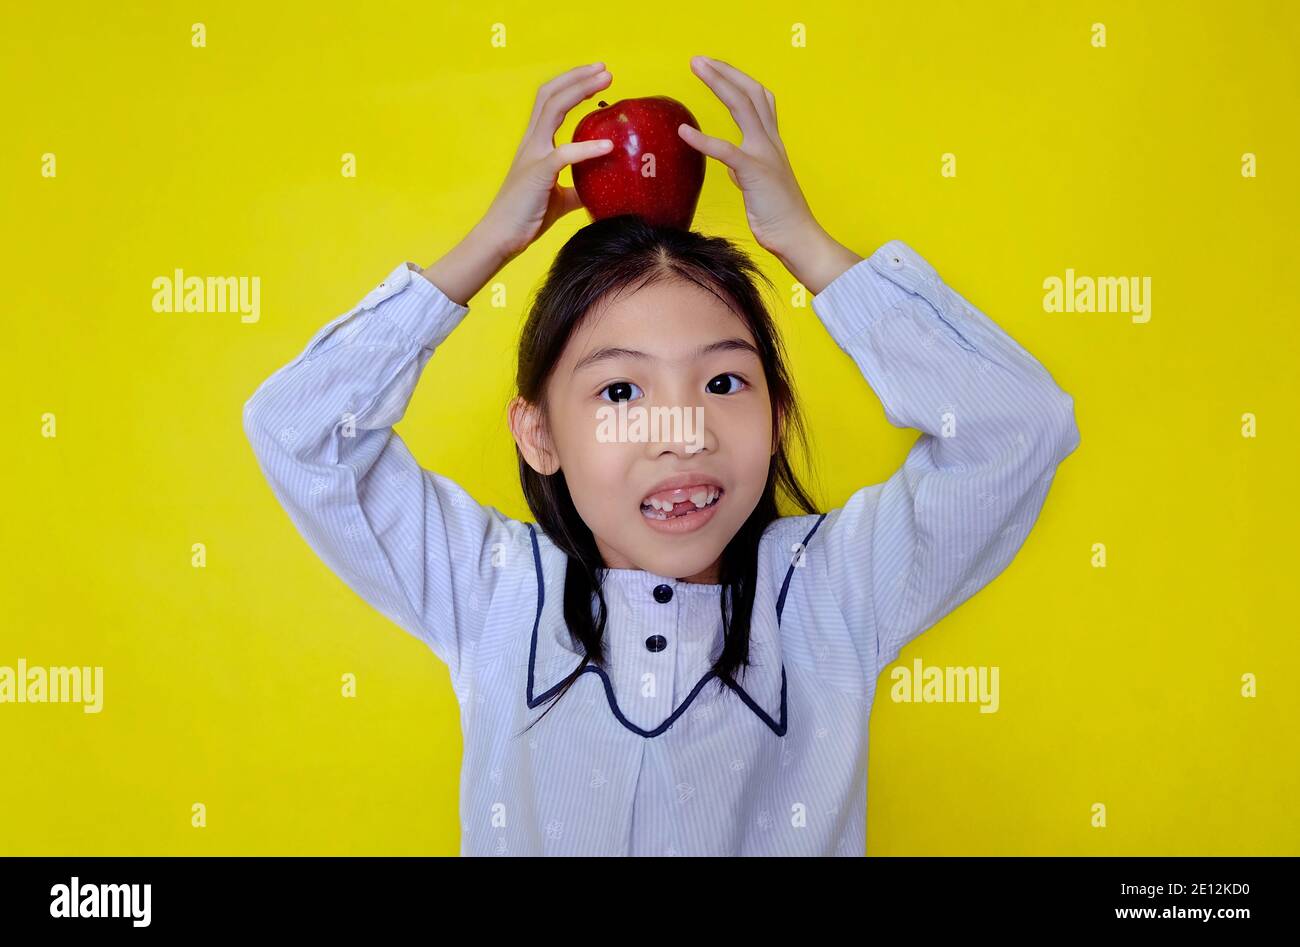 Ein süßes junges asiatisches Mädchen, das versucht, einen roten Apfel oben auf ihrem Kopf zu balancieren, ihn mit ihren Händen zu verkrampfen, bevor es loslässt. Hellgelber Hintergrund. Stockfoto